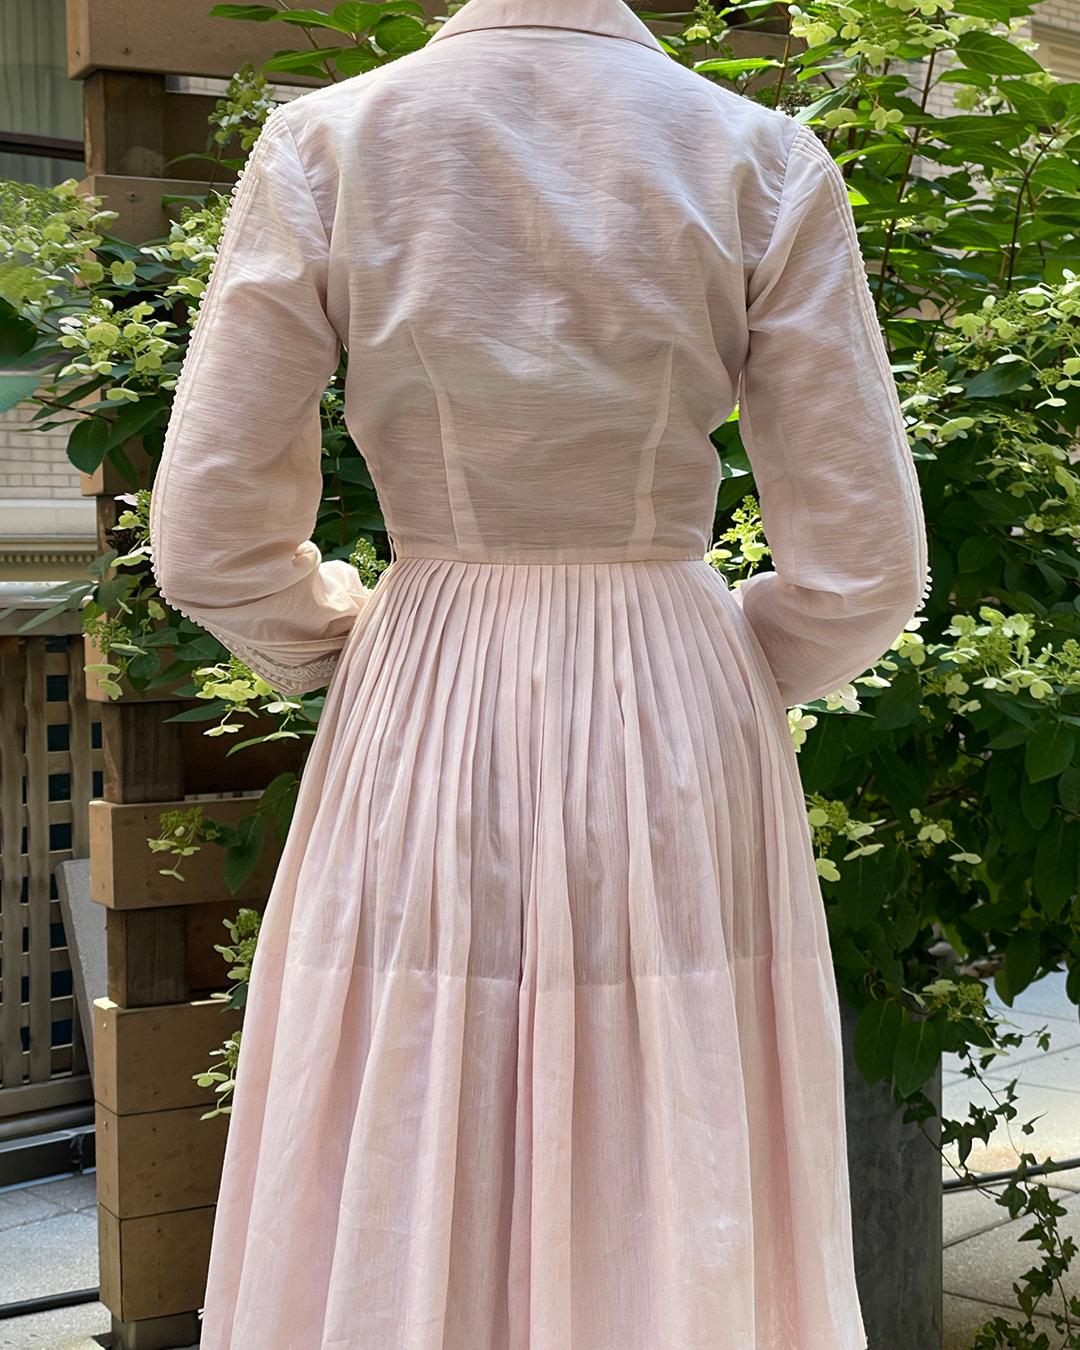  Vintage 1950s Shirtwaist Dress by L'AIGLON For Sale 2